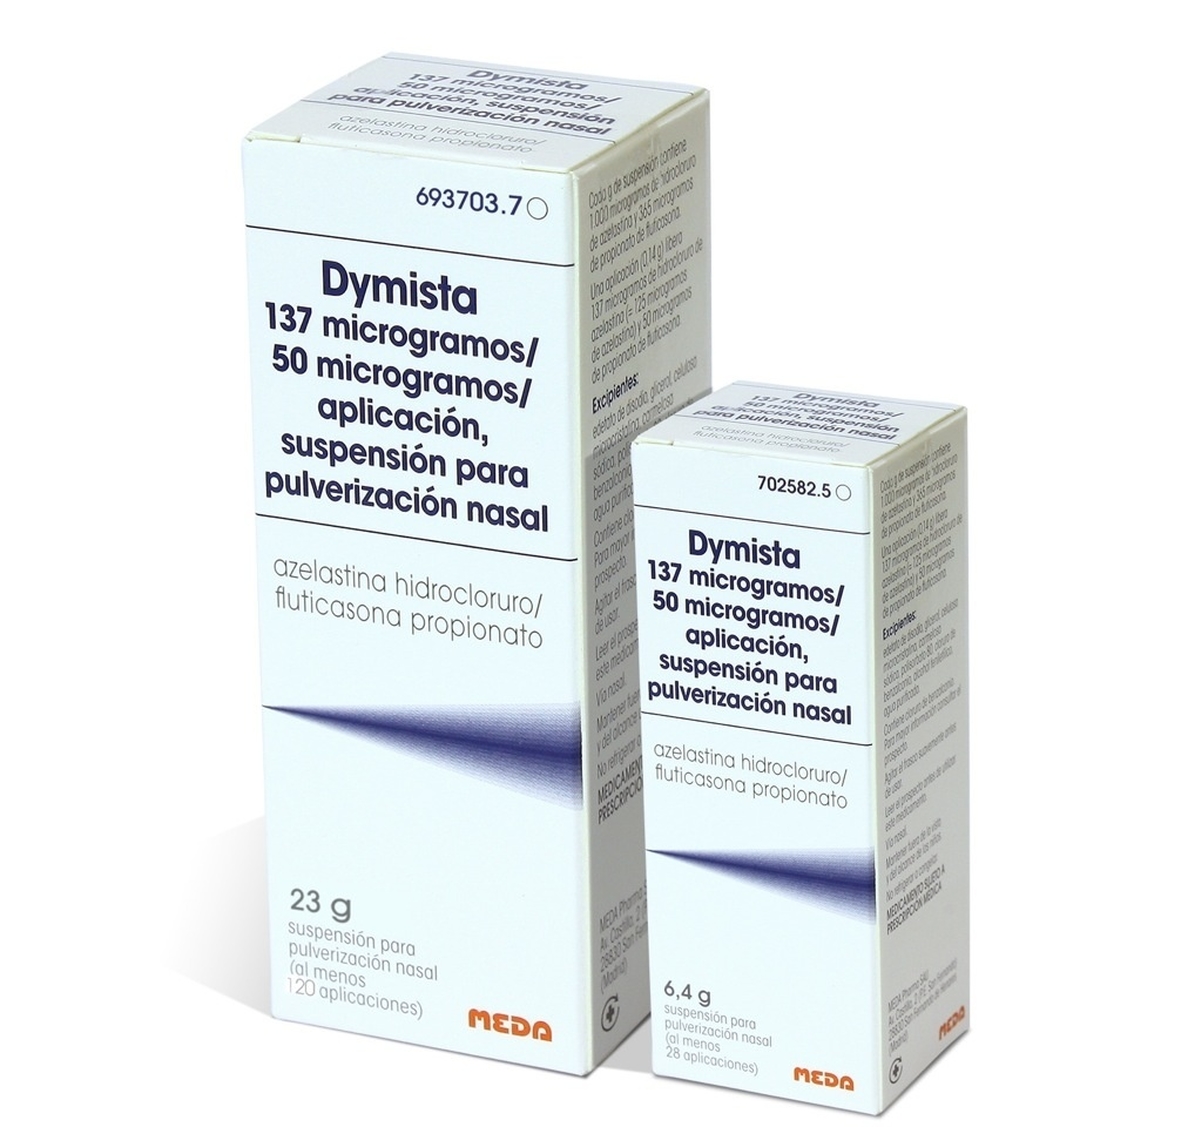 Laboratorios MEDA lanza »Dymista», un nuevo fármaco para tratar la rinitis alérgica